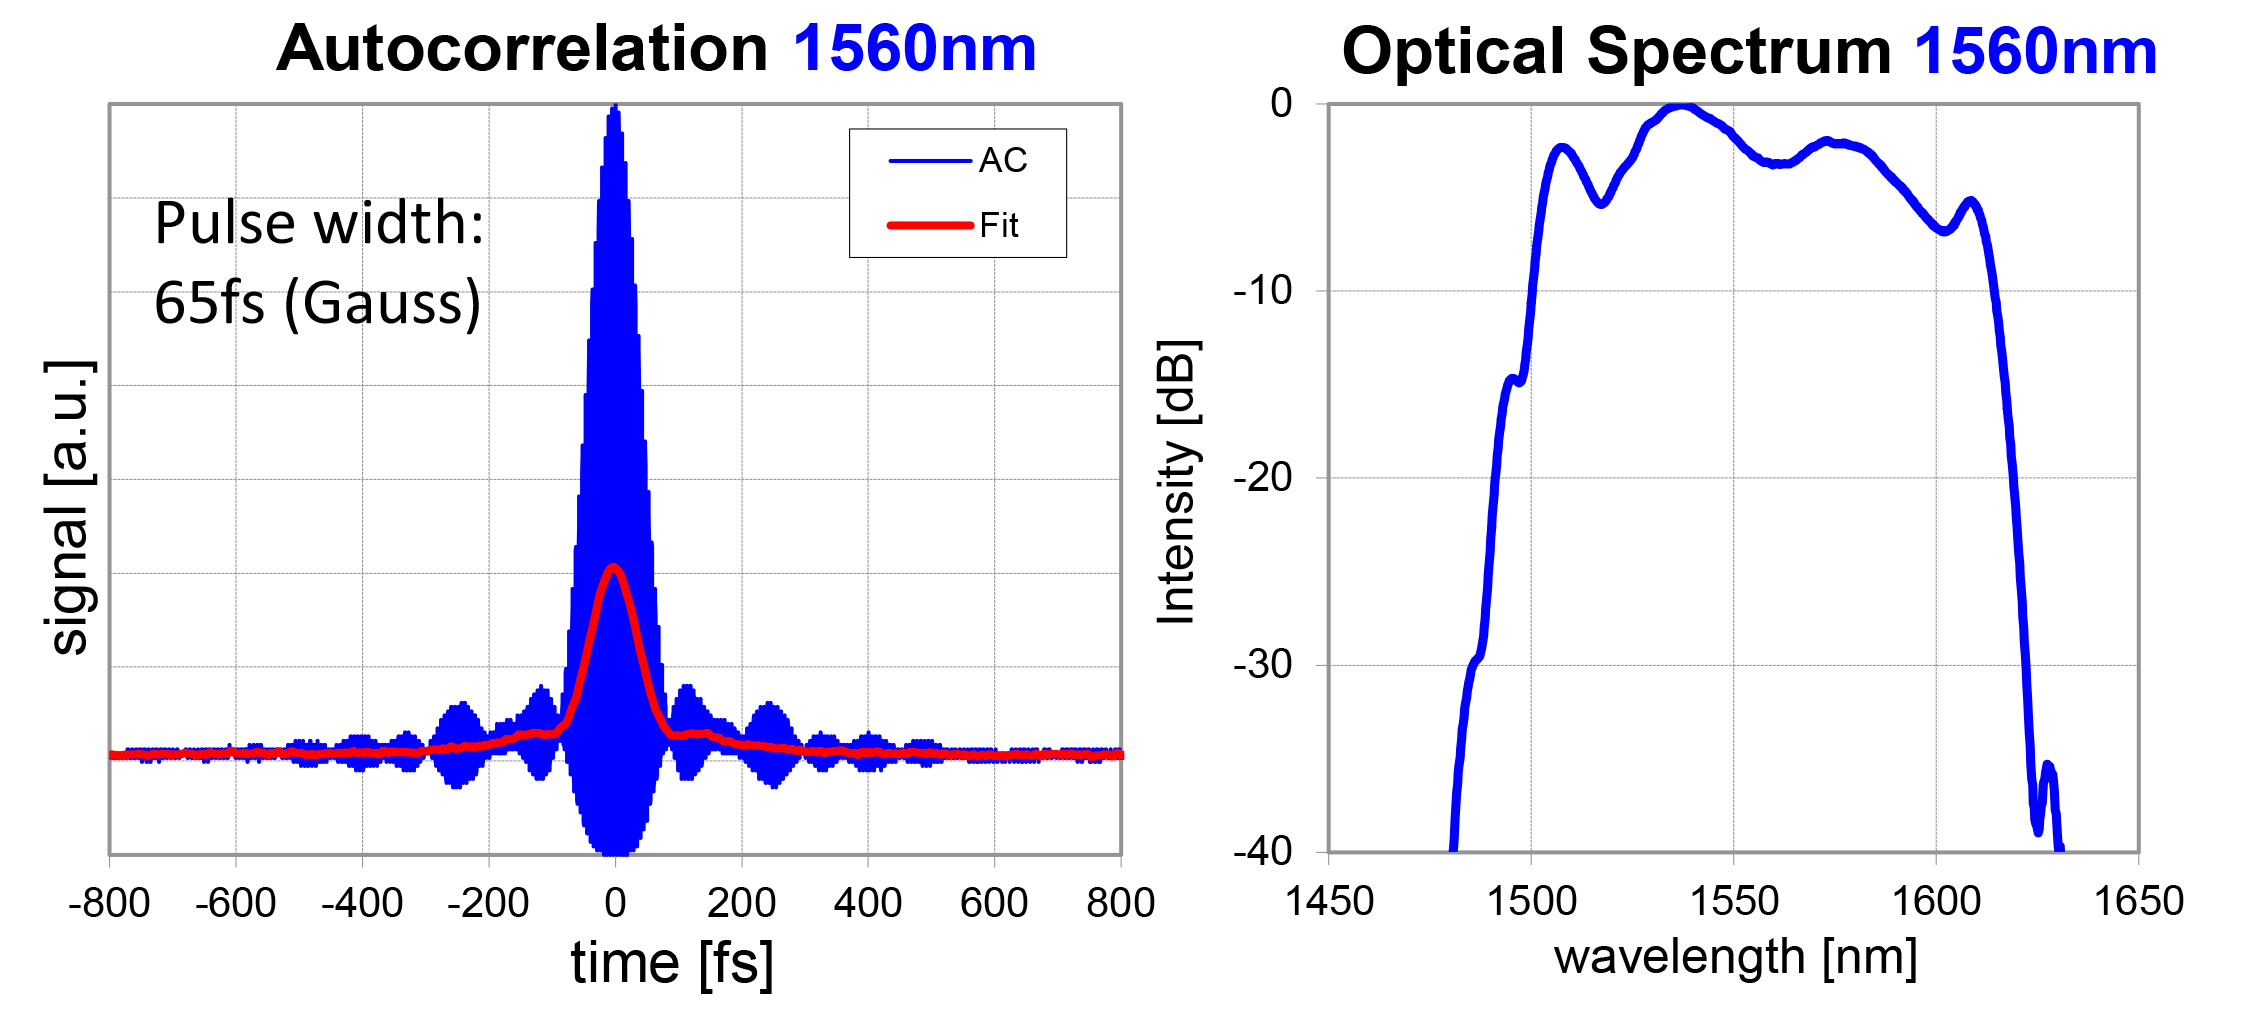 C-Fiber_Autocorrelation_OpticalSpectrum_1560nm.jpg